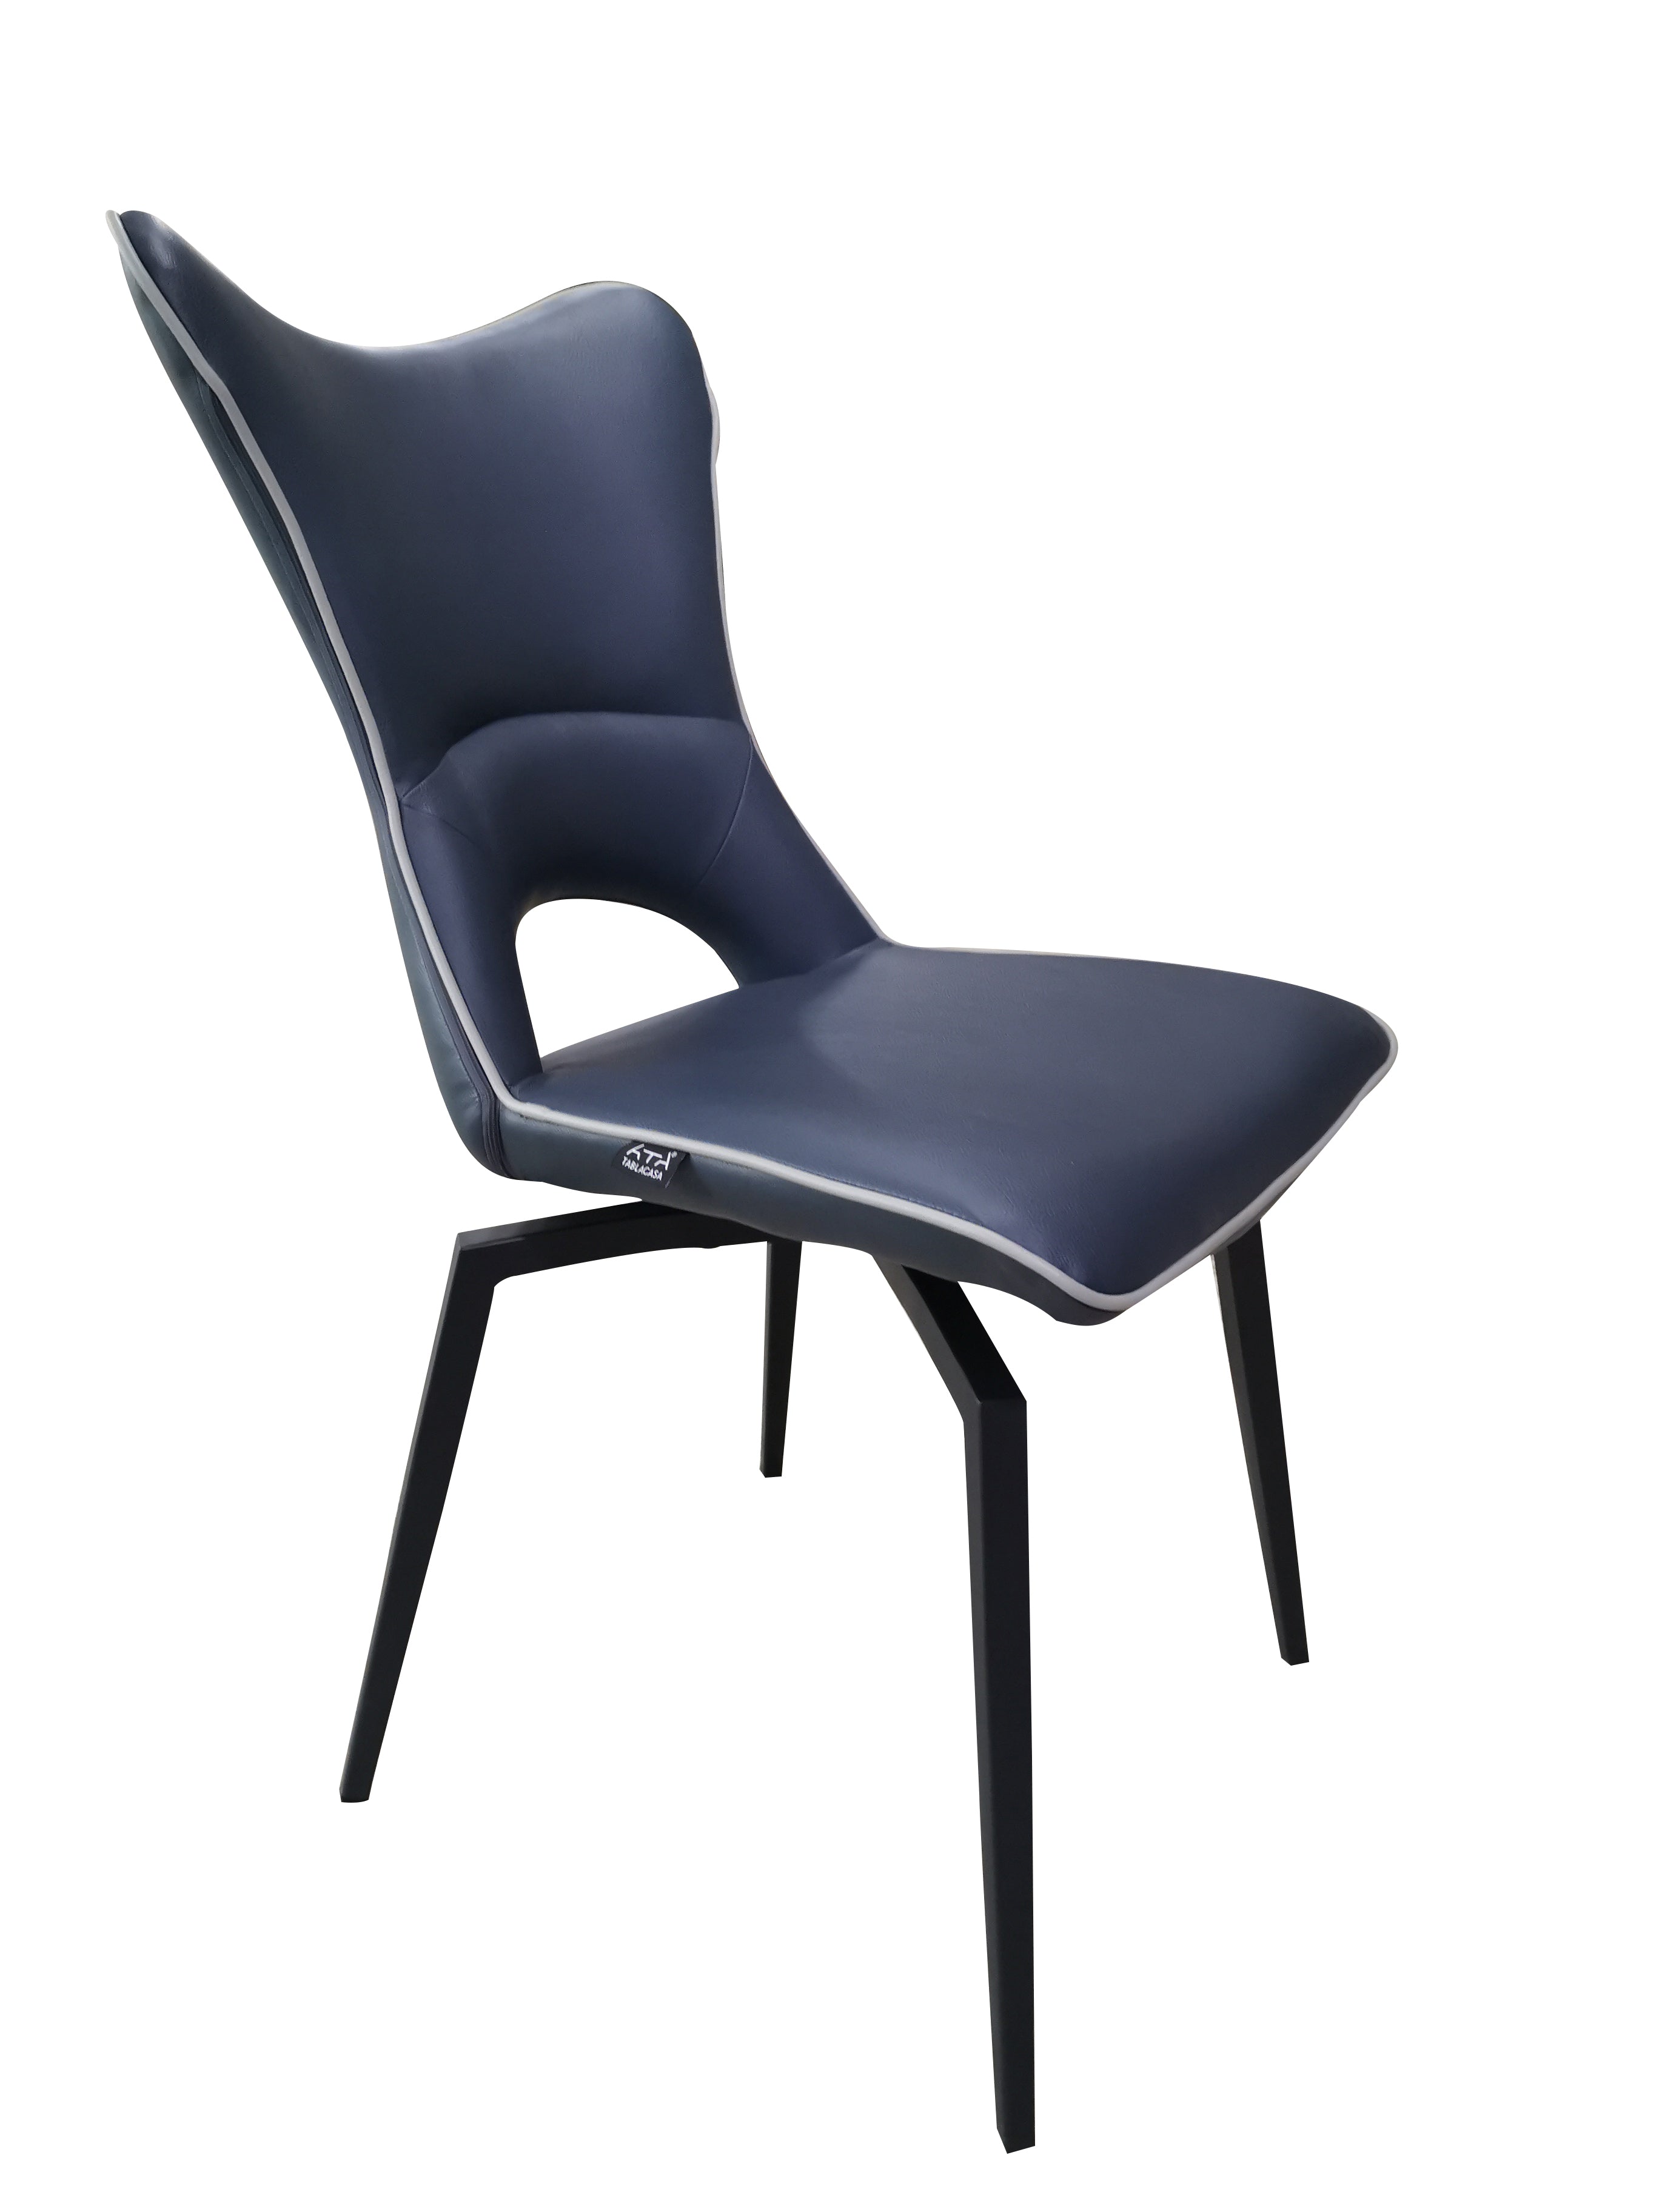 Chaise pivotante bleu design pieds métal noir  - Holga